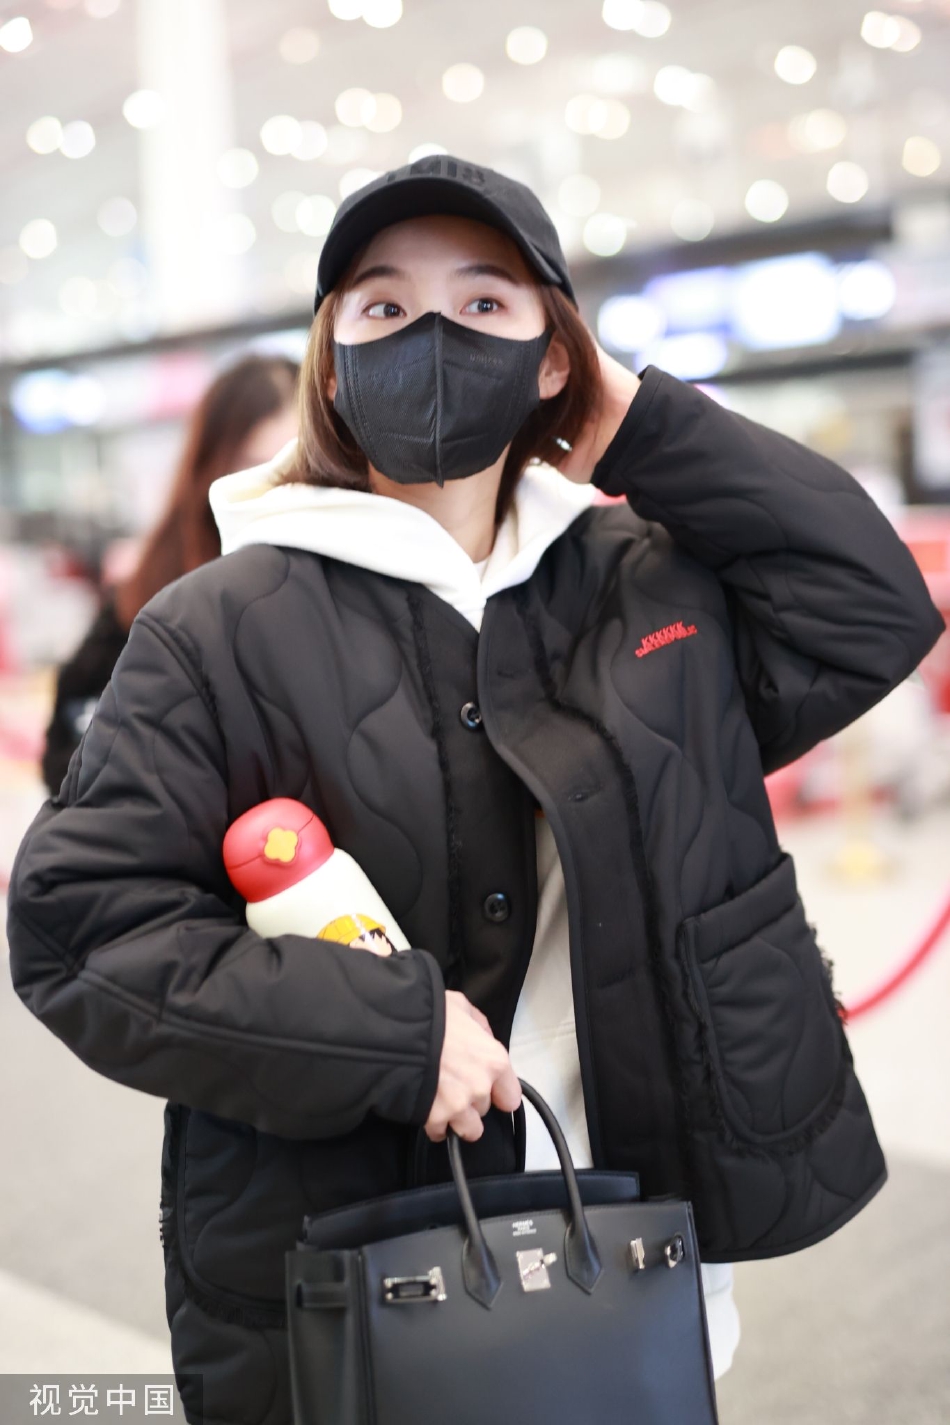 组图:张佳宁休闲造型现身机场 白色帽衫搭黑色外套活力随性